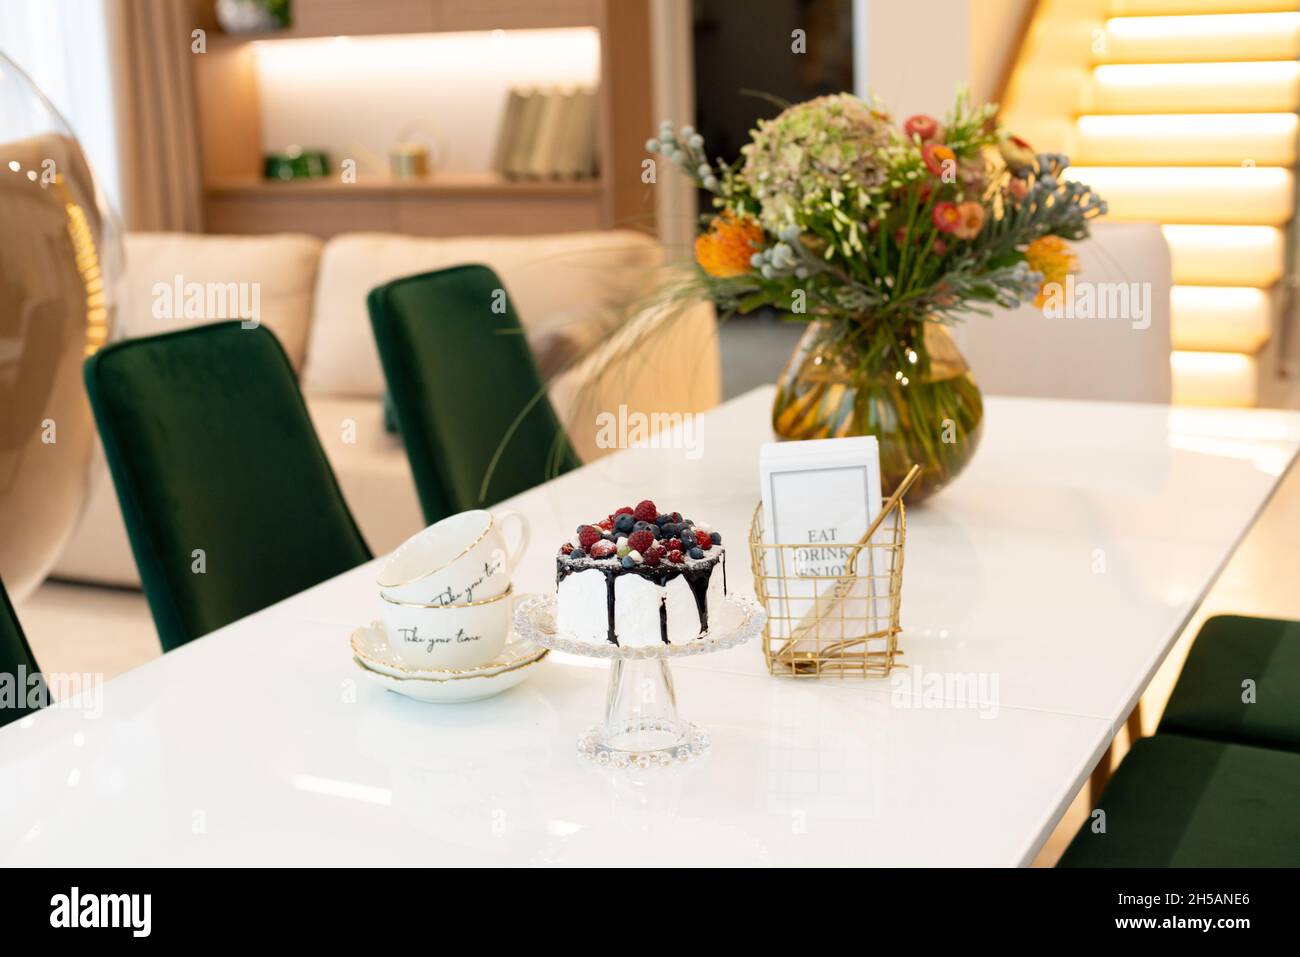 Un exquisito pastel de bayas sobre un soporte de cristal sobre una mesa con un jarrón de flores y un set de té en un moderno diseño interior. Enfoque selectivo suave, art nois Foto de stock